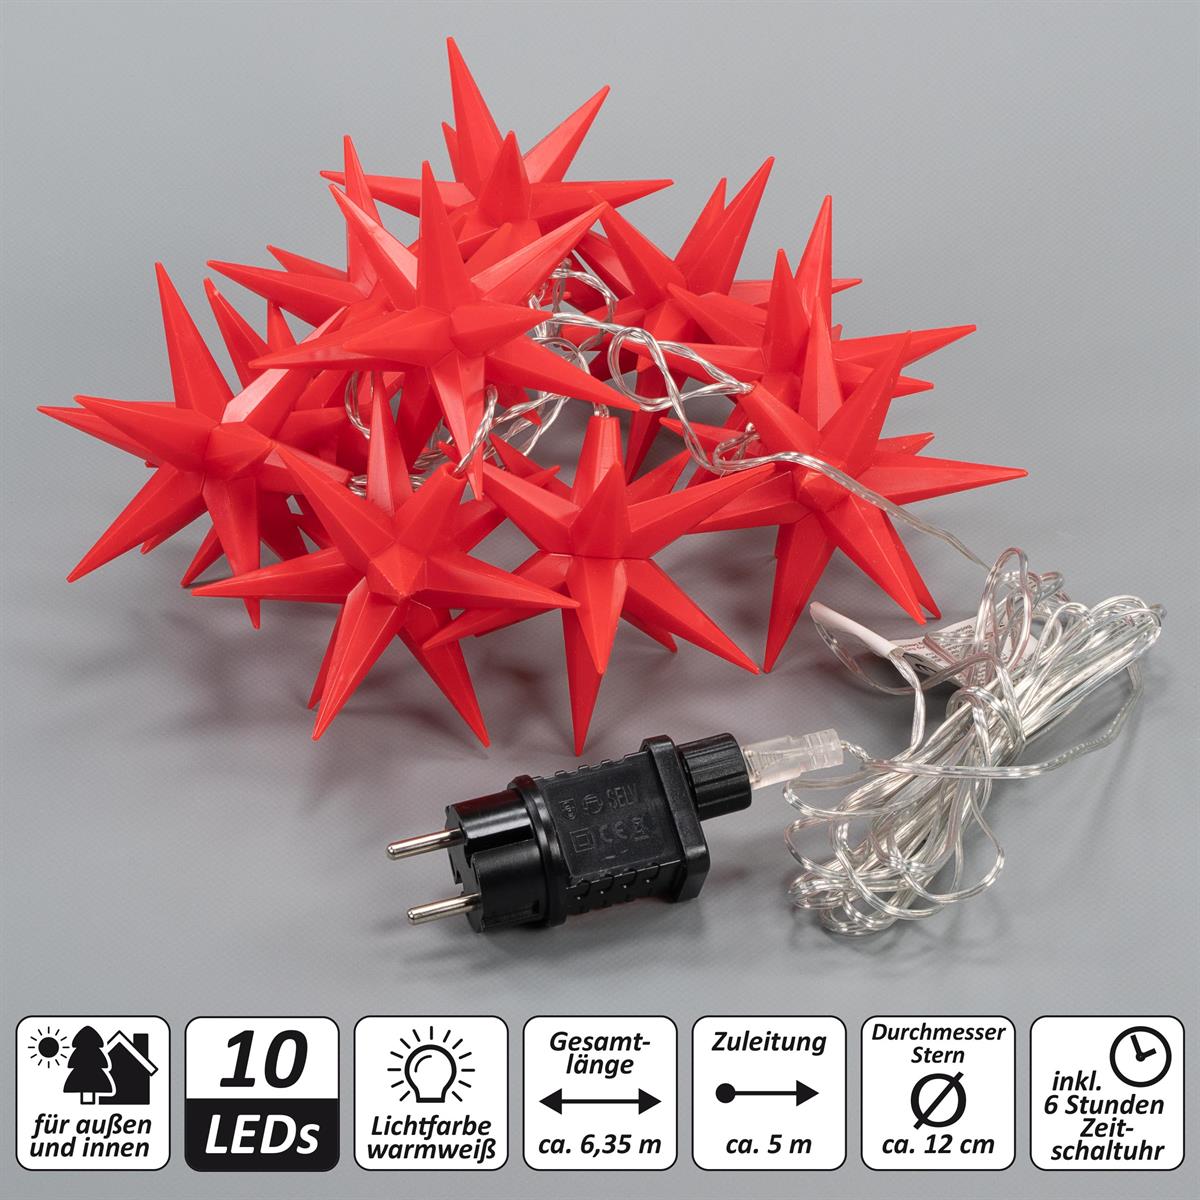 10 LED Lichterkette Weihnachts-Sterne rot Xmas Trafo Weihnachts-Deko Timer